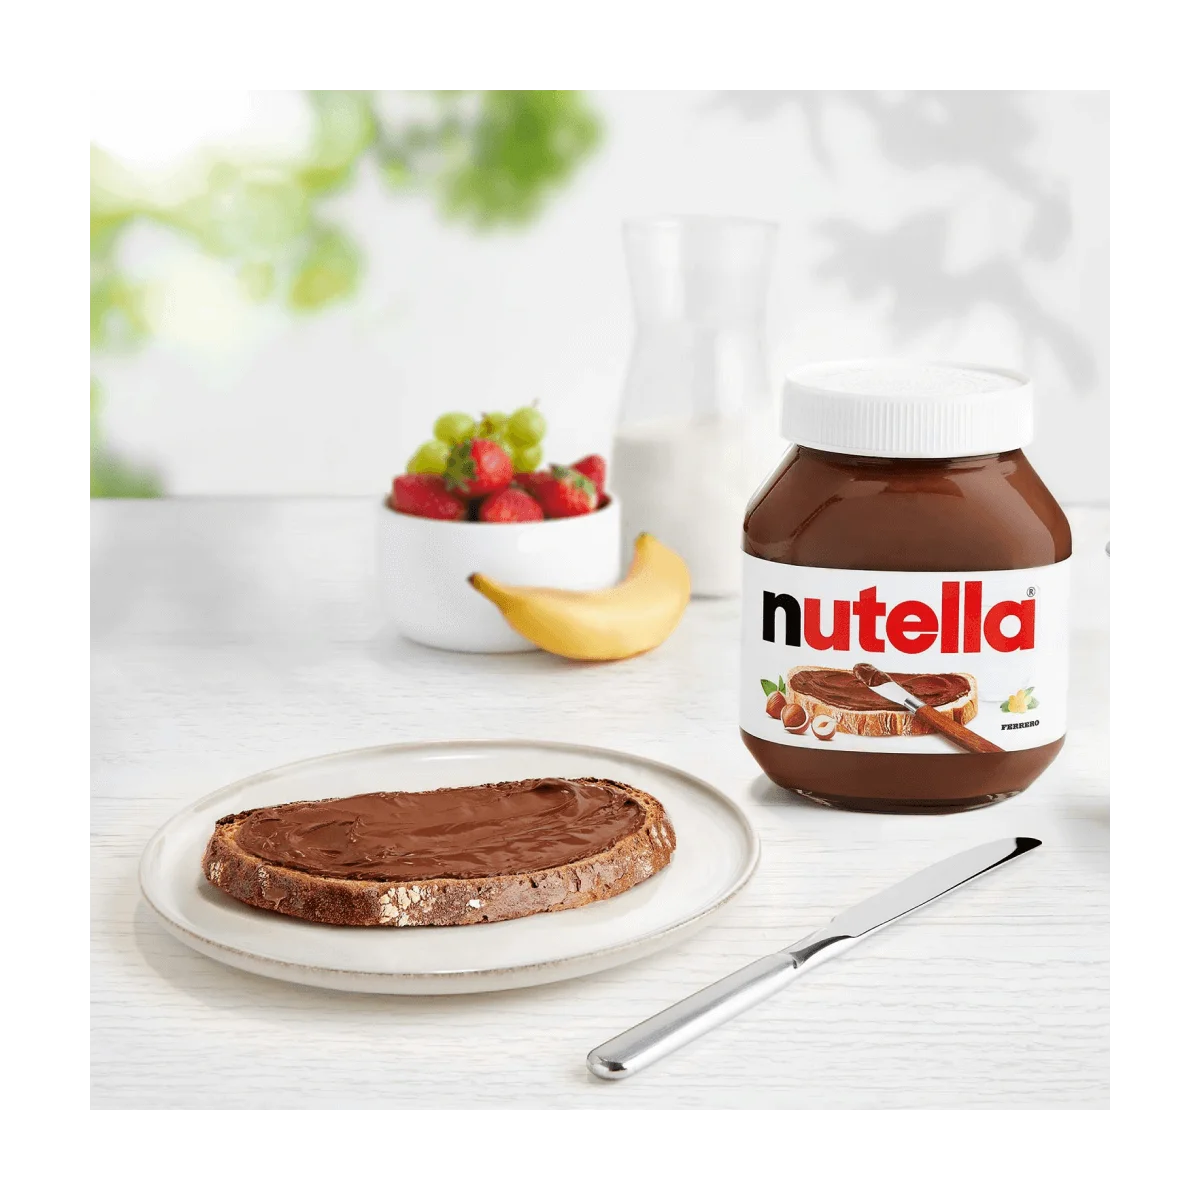 Ferrero Nutella Nuss-Nougat Creme, 750 g